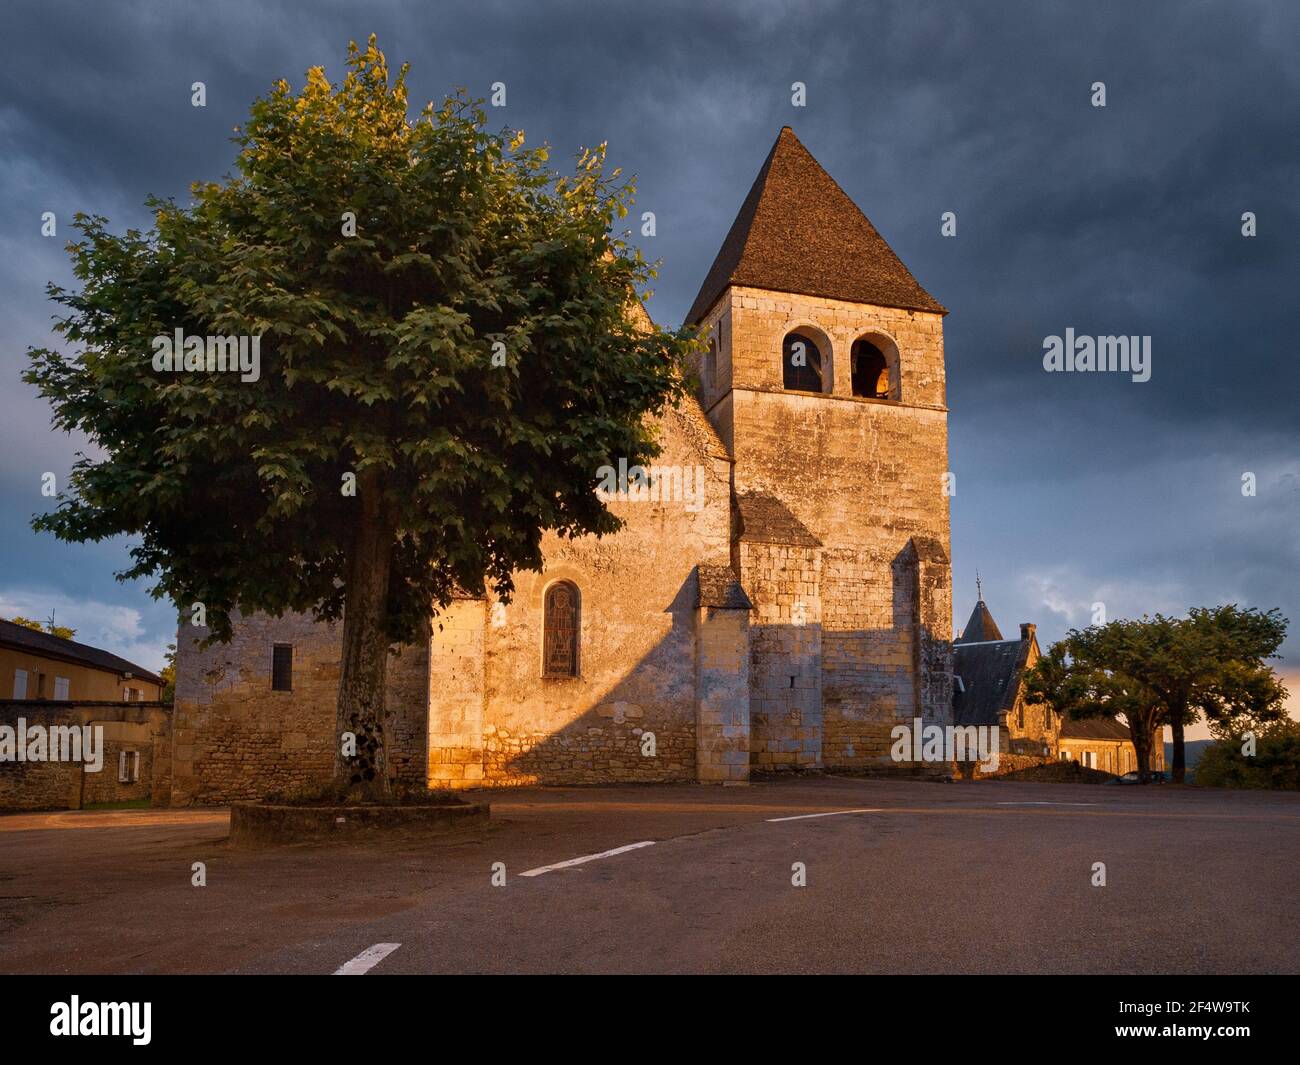 Une église de village en Dordogne en France Église Saint-Martin de Vitrac. Vitrac est un village français situé à quelques kilomètres de Sarlat Banque D'Images